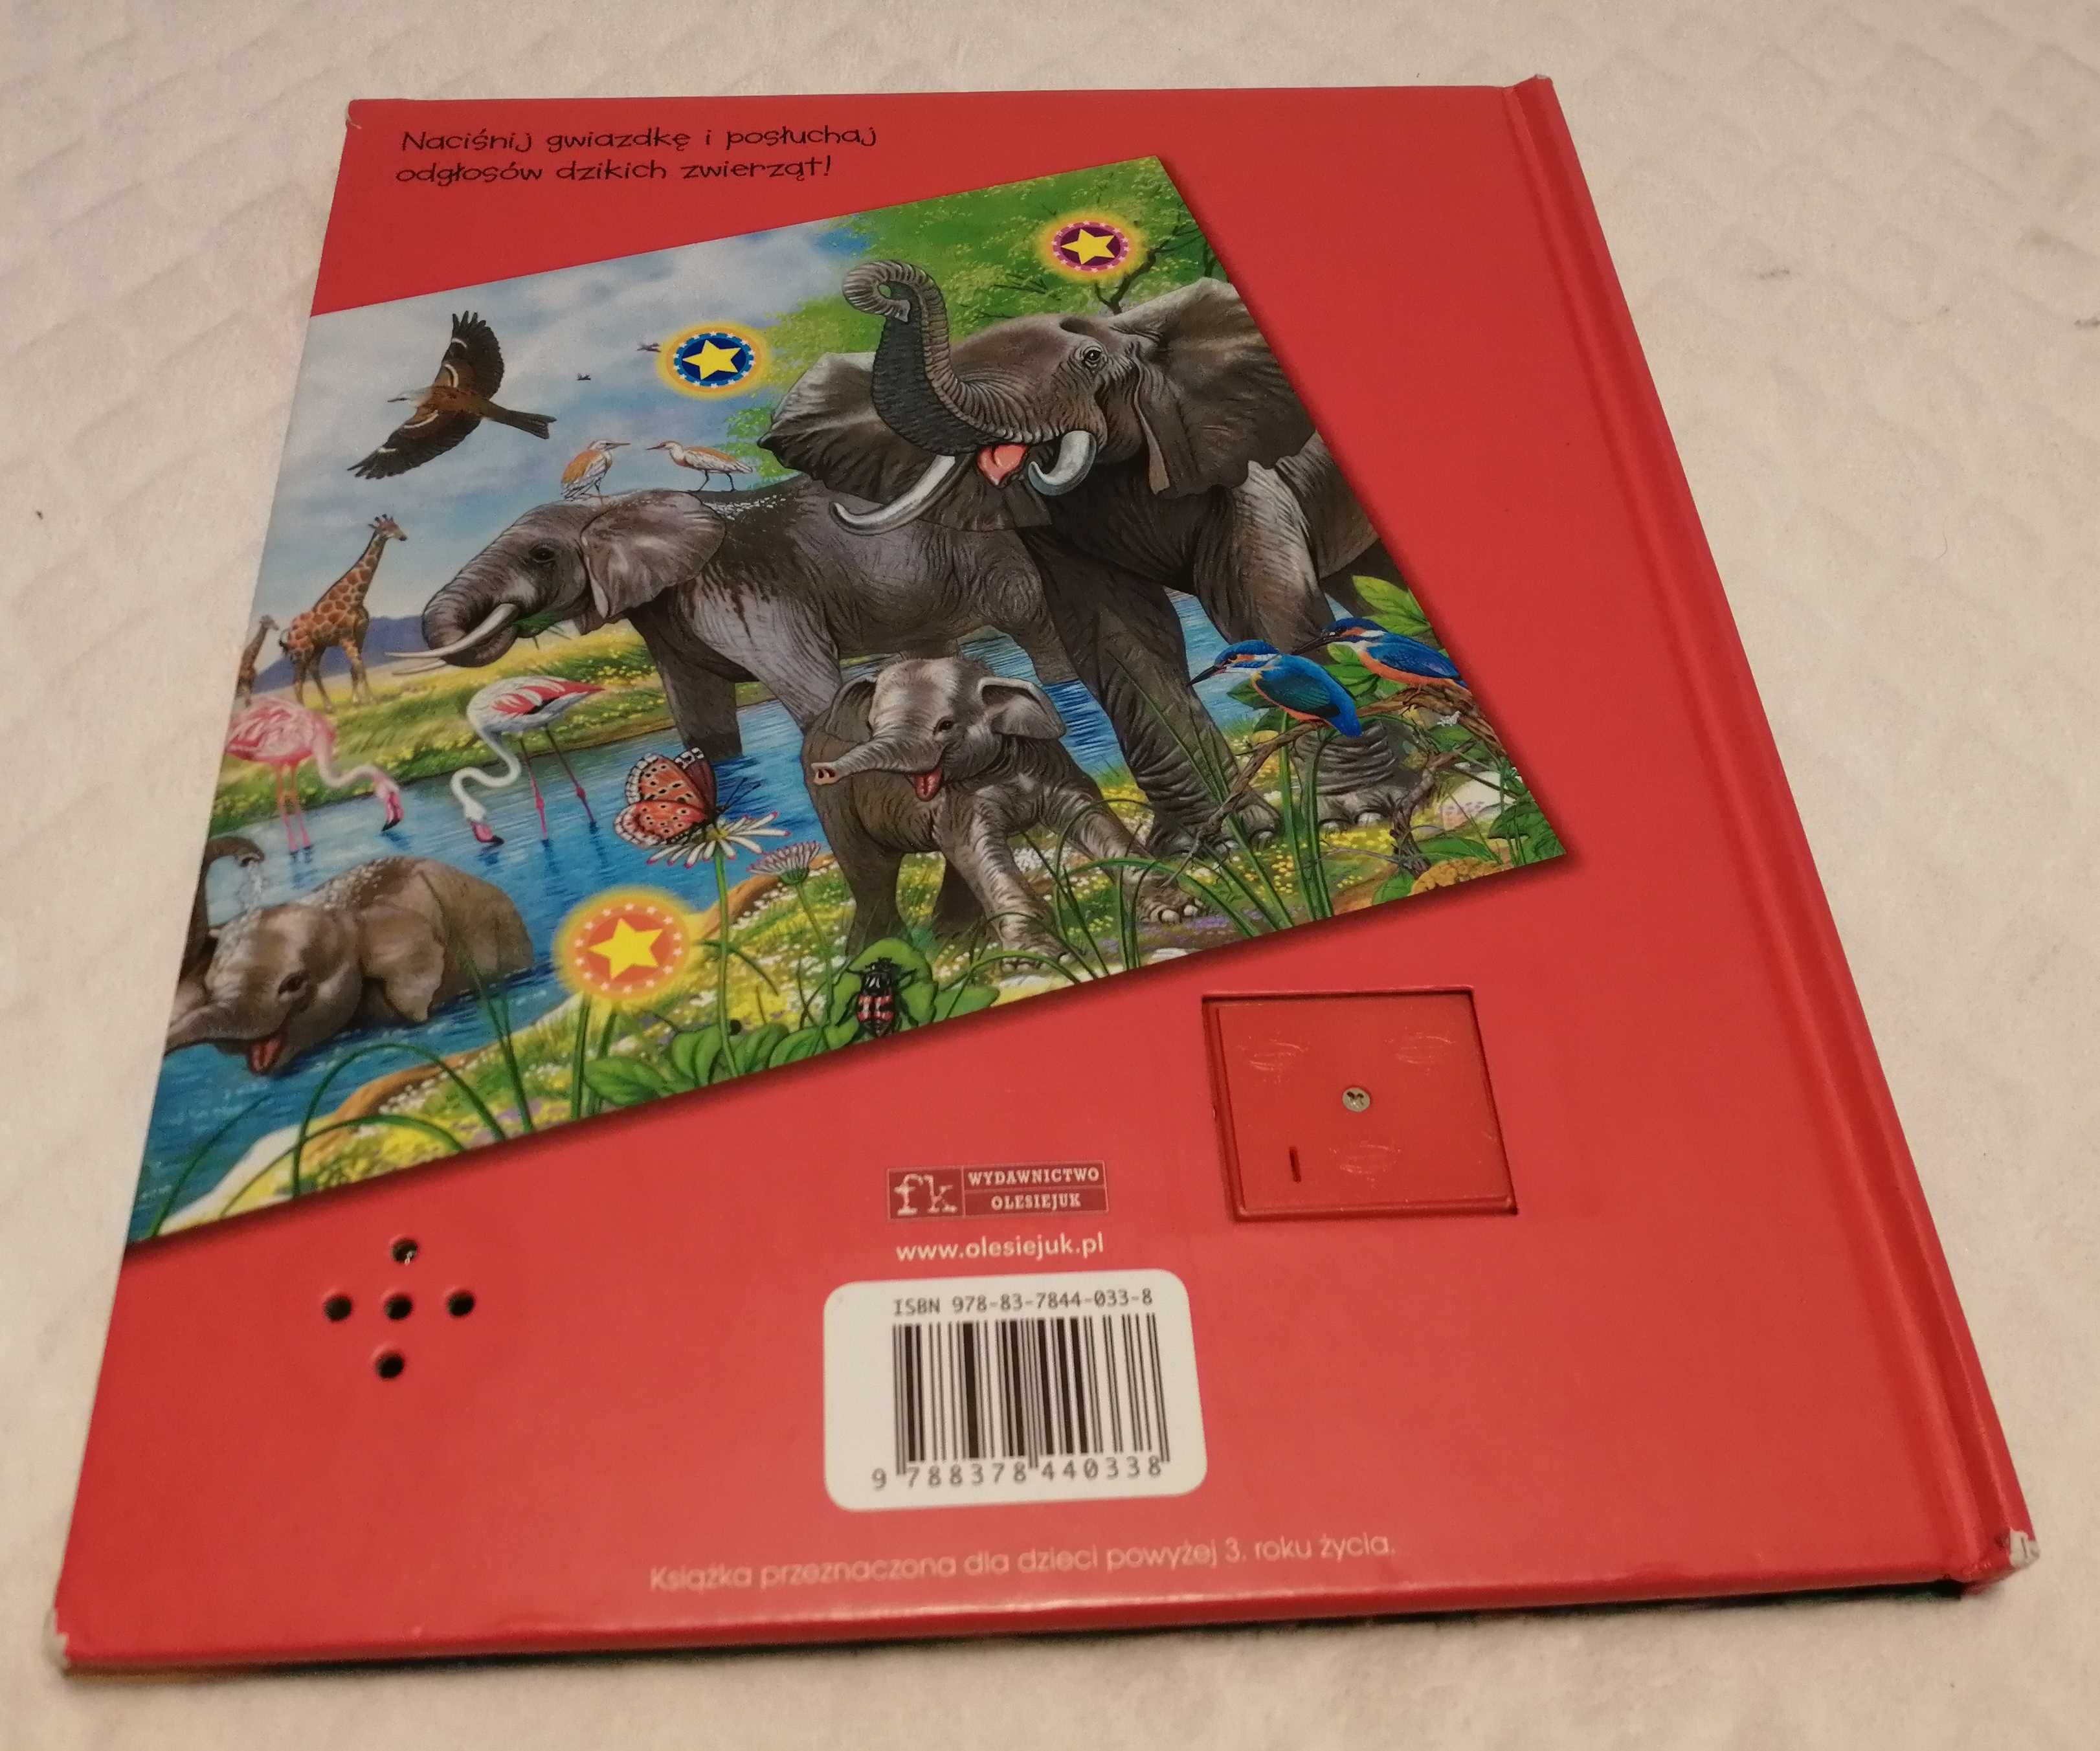 Odgłosy dzikich zwierząt, książeczka dźwiękowa (Książeczki dla dzieci)